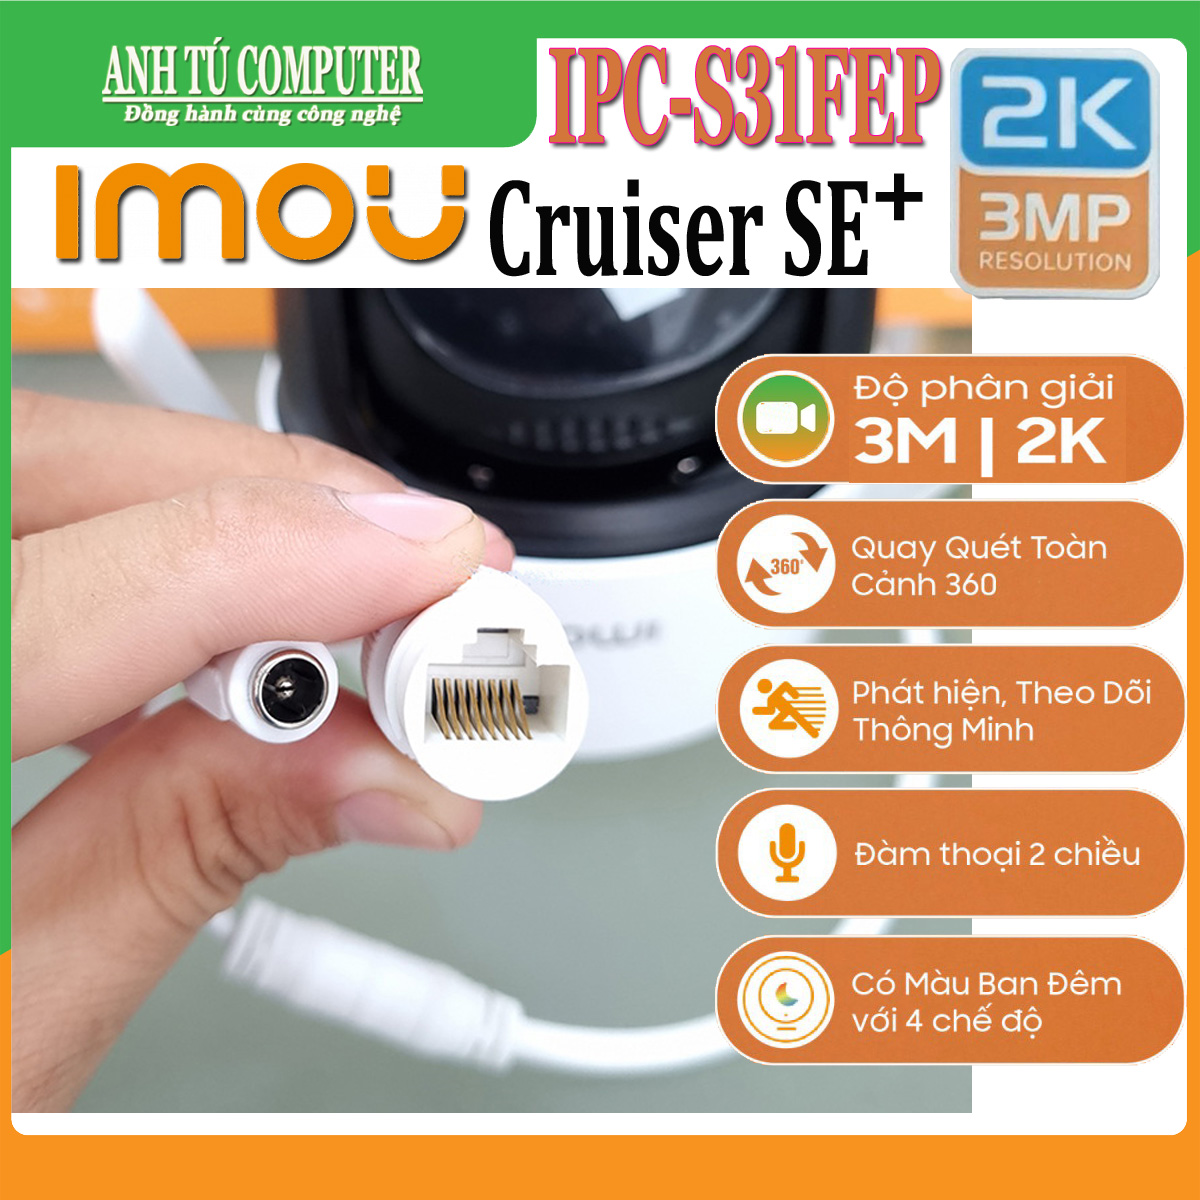 Hình ảnh Camera WIFI 3MP 2K iMOU Cruiser SE+ IPC-S31FEP Có đàm thoại - hàng chính hãng